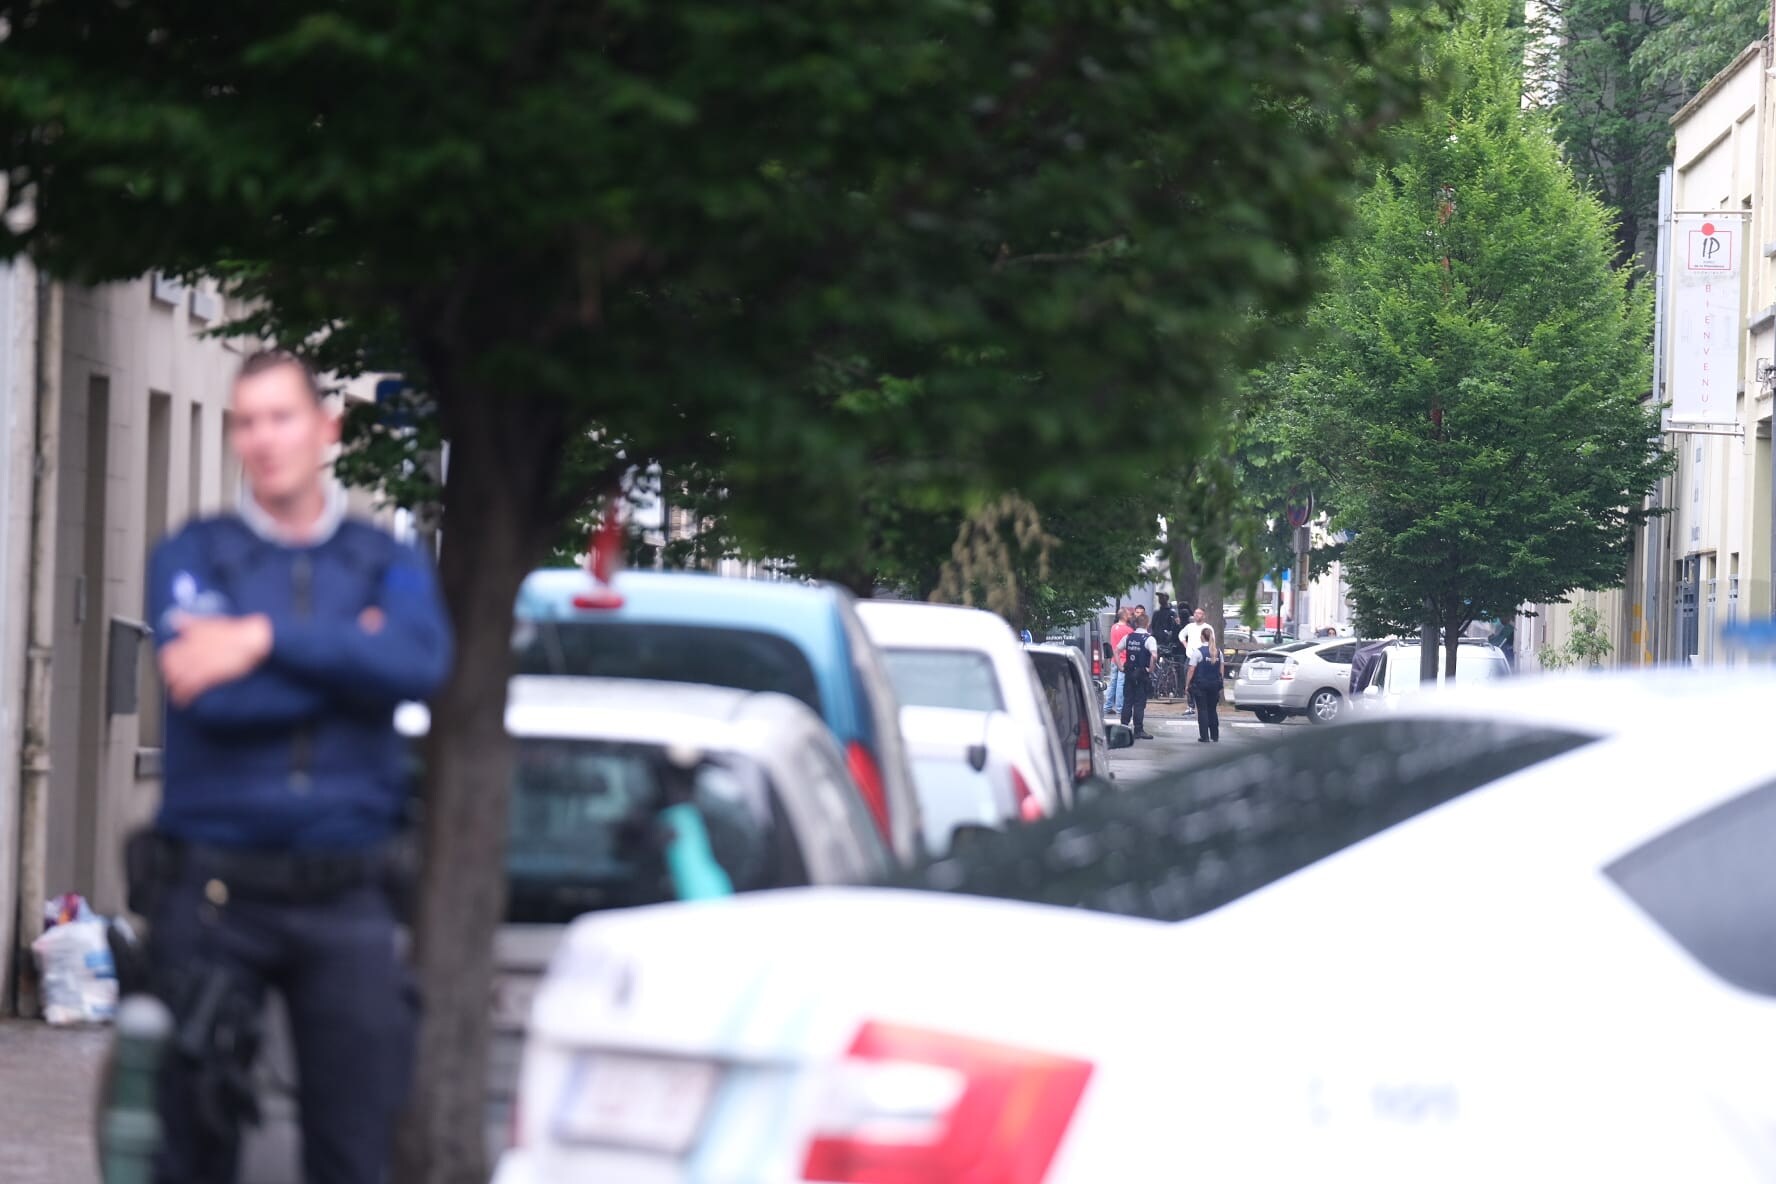 Zoekactie naar gewapende man in school in Anderlecht afgelopen, nog geen verdachte opgepakt